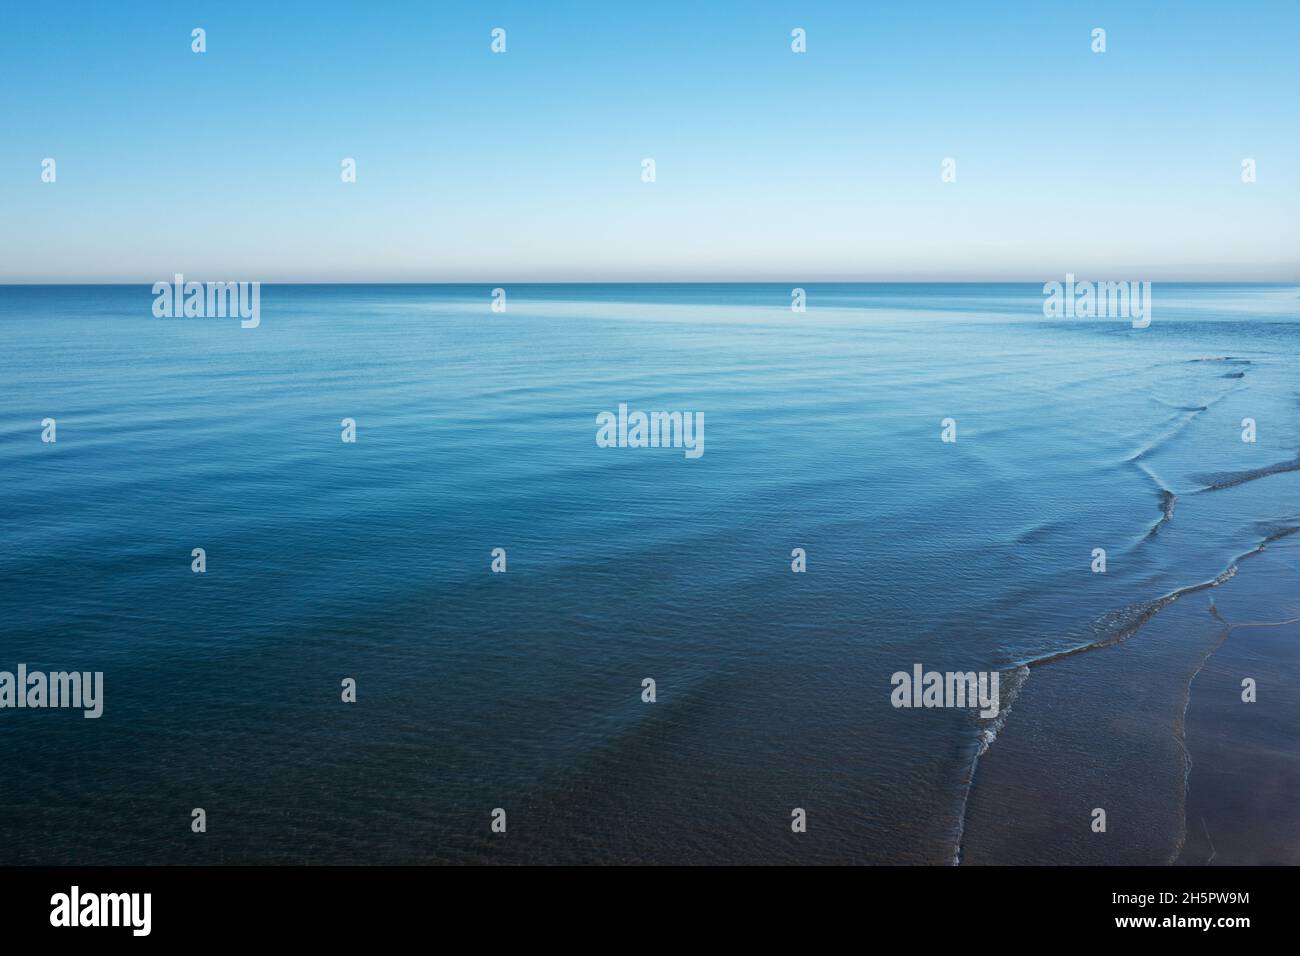 Gros plan sur une mer bleu océan calme avec ciel ouvert à la lumière du jour.Texture d'arrière-plan abstraite.Photo de haute qualité Banque D'Images